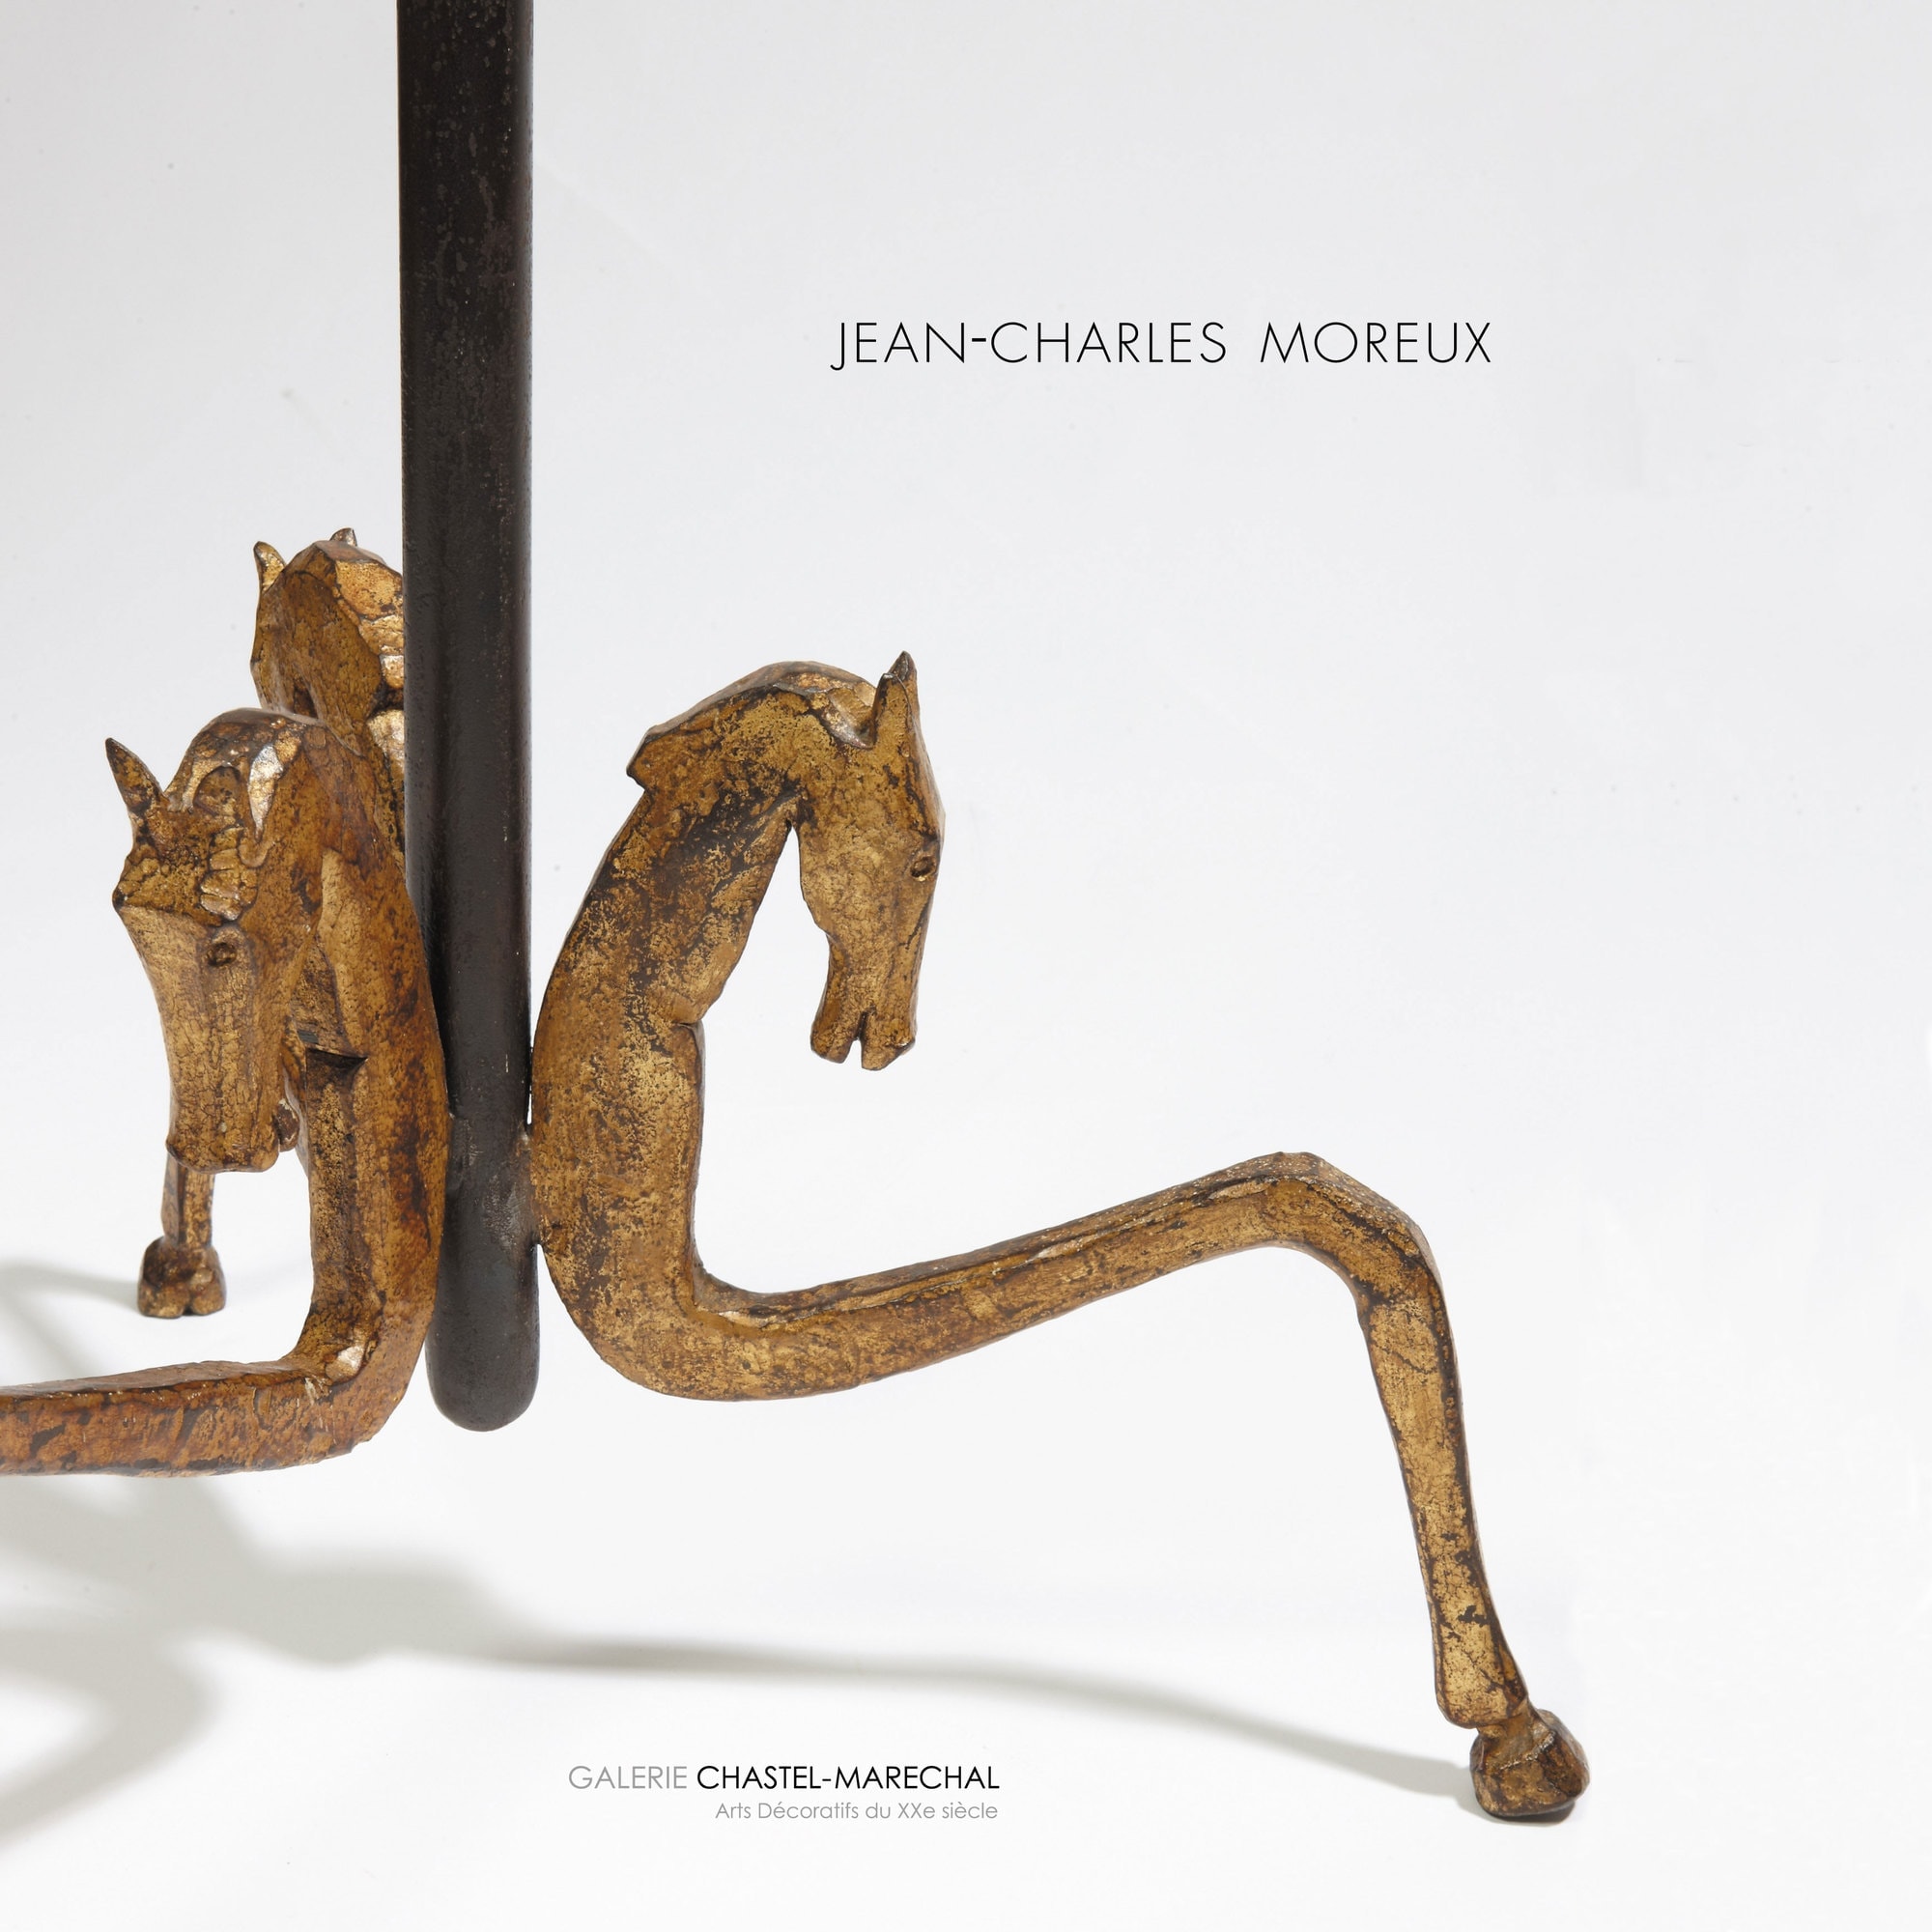 “Jean-Charles Moreux, Baroque et Surréalisme”, Susan Day, exhibition catalogue, Galerie Chastel-Maréchal, Paris, septembre 2012